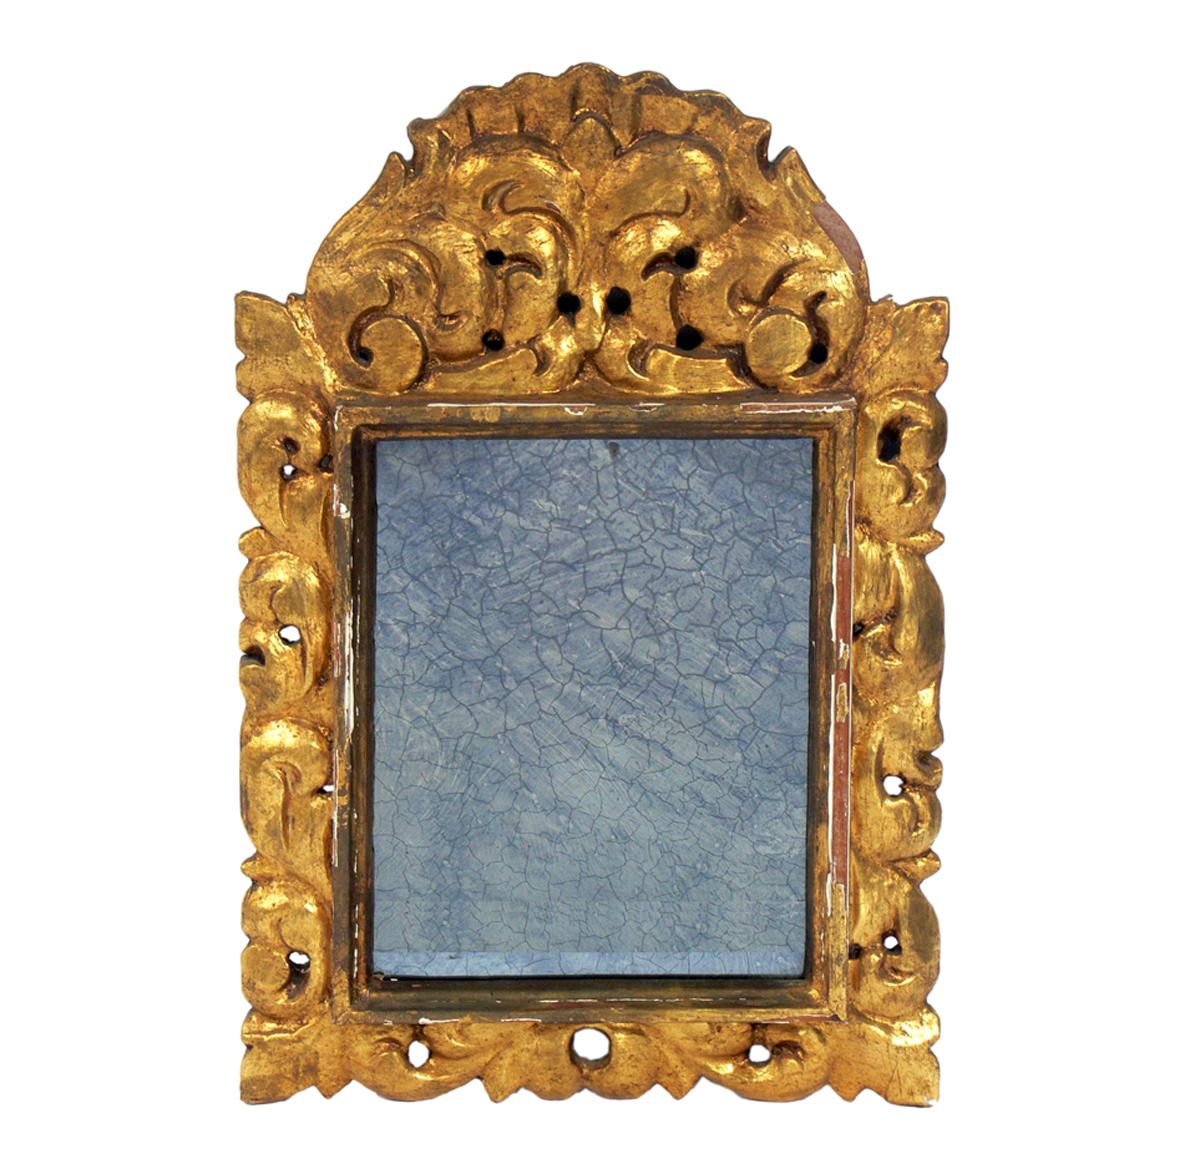 Auswahl antiker vergoldeter Spiegel #5, um die Mitte des 20. Jahrhunderts.
Sie sind:
1) Spanischer vergoldeter Spiegel, ca. 1940er Jahre. Behält den originalen antikisierten Spiegel. Sie ist auf dem ersten Foto links zu sehen. Er misst 17,5